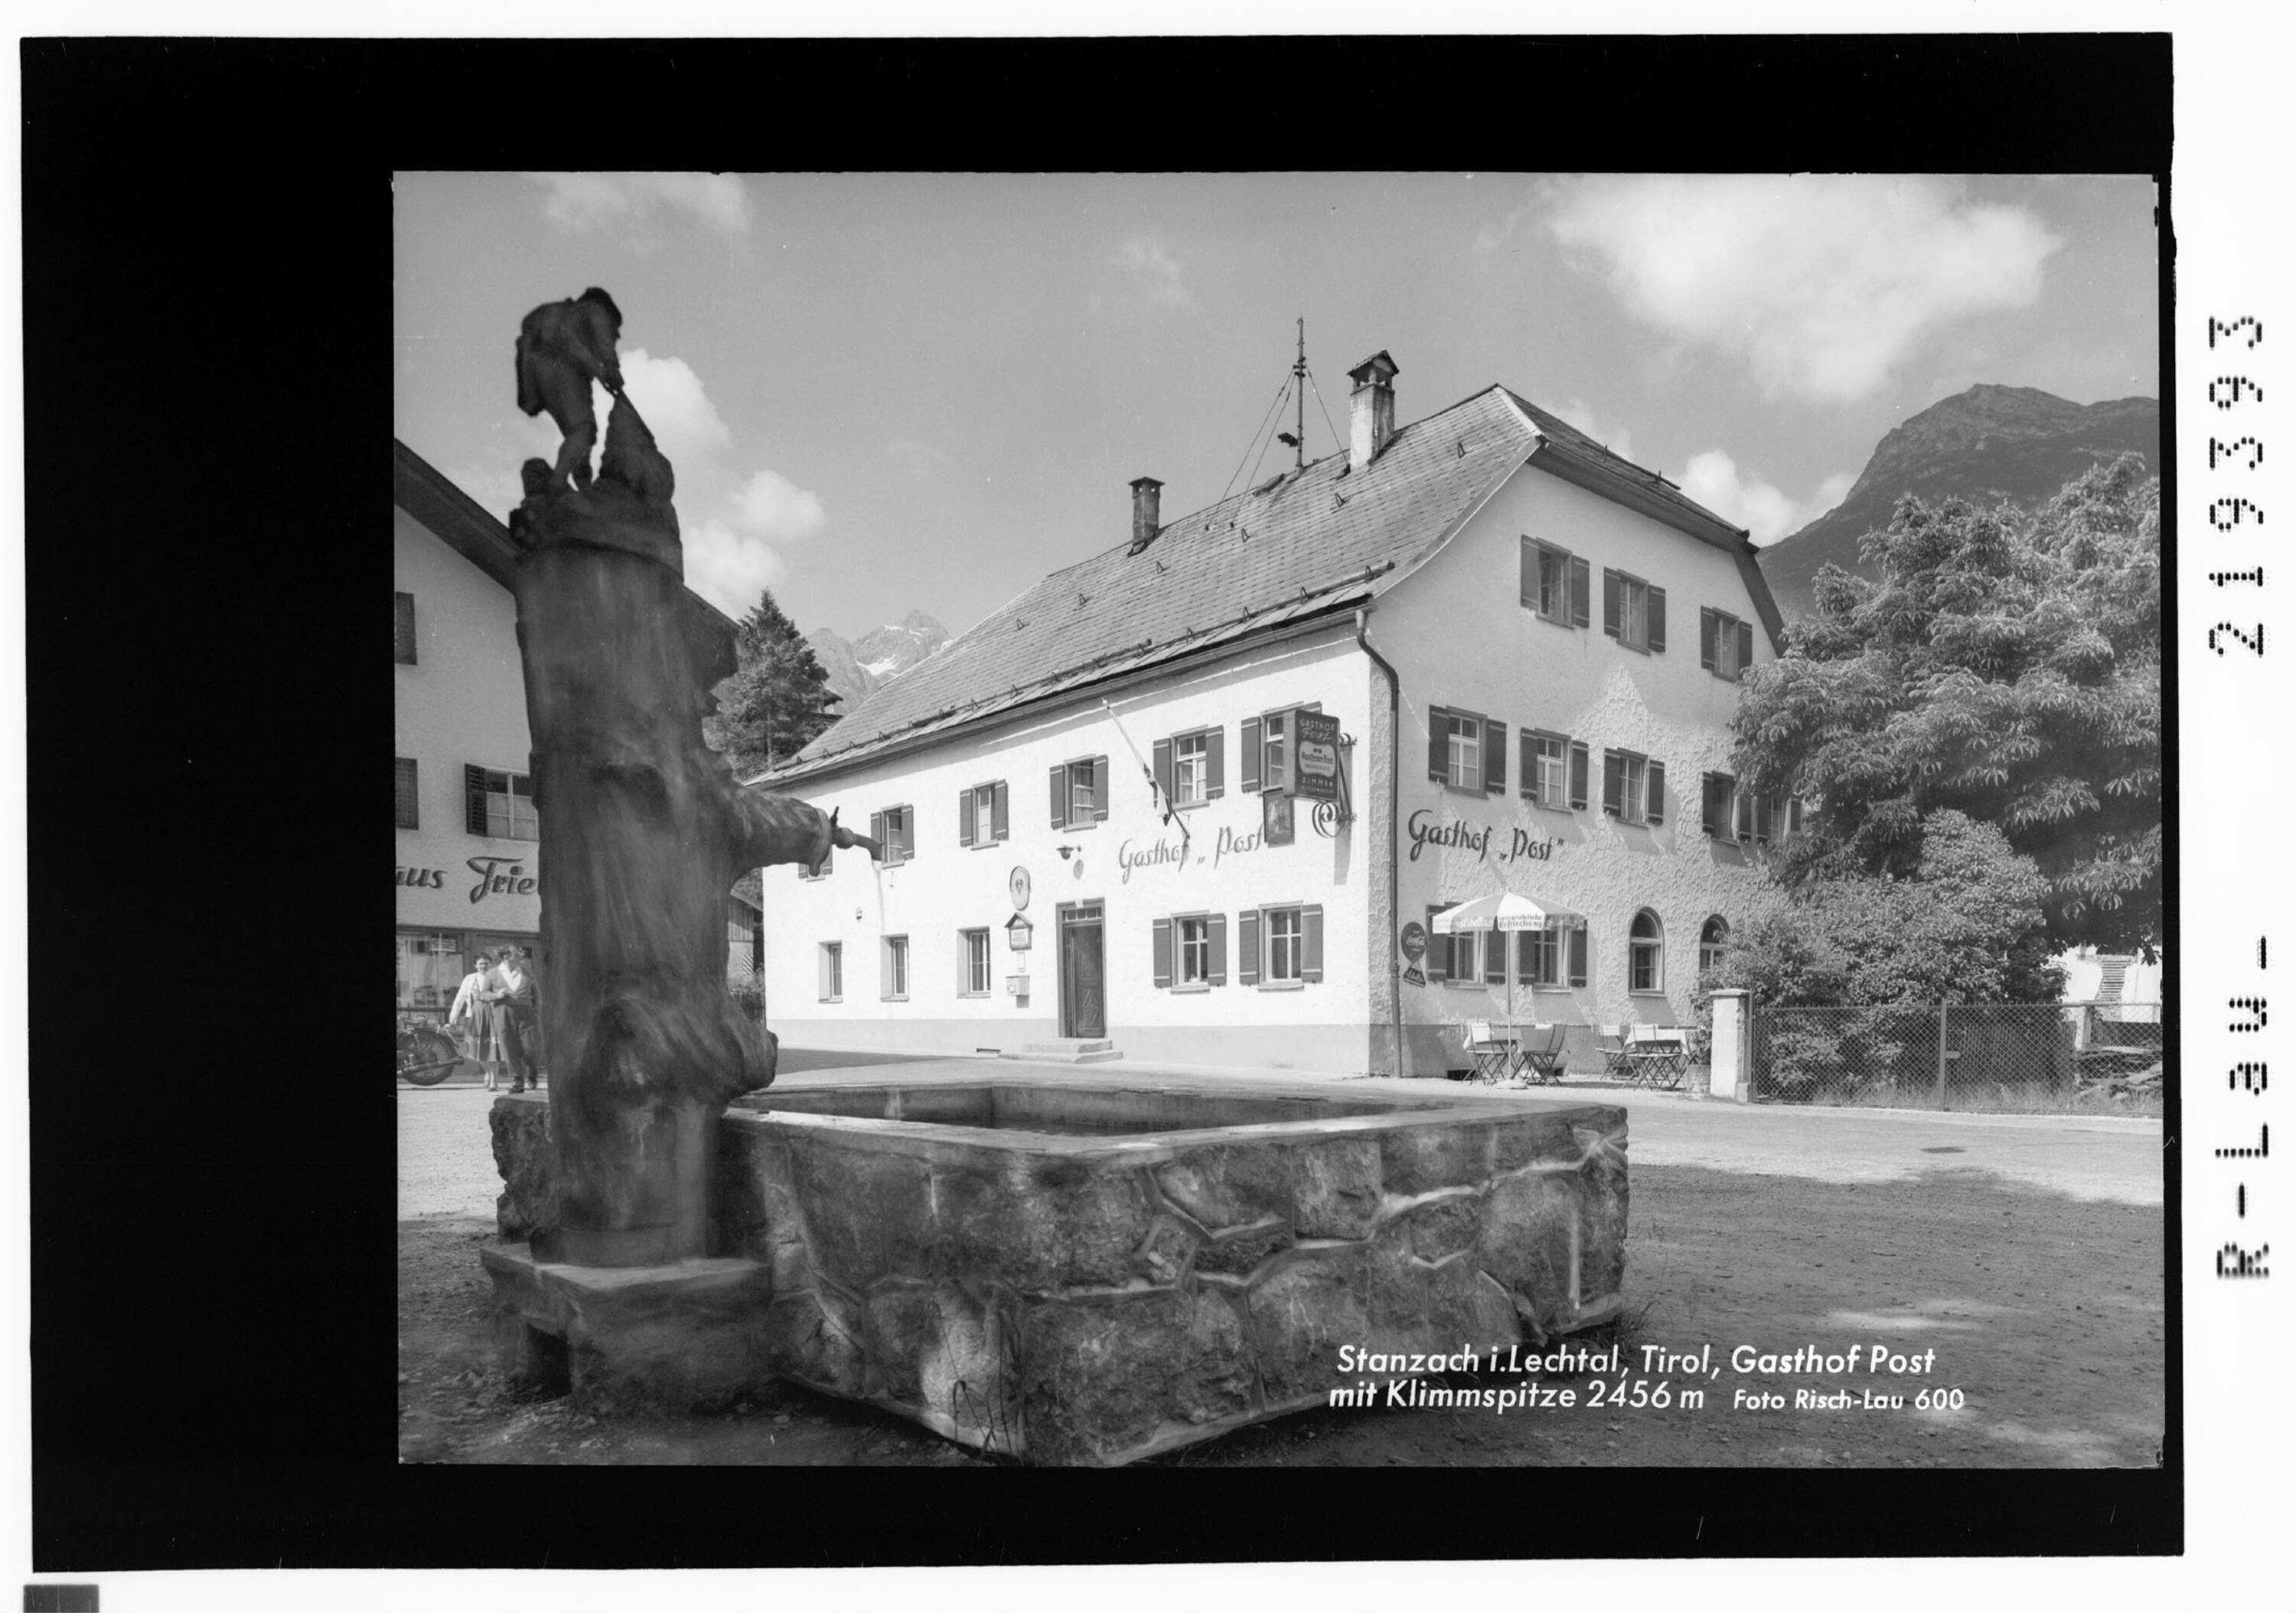 Stanzach im Lechtal/ Tirol Gasthof Post mit Klimmspitze 2456 m></div>


    <hr>
    <div class=